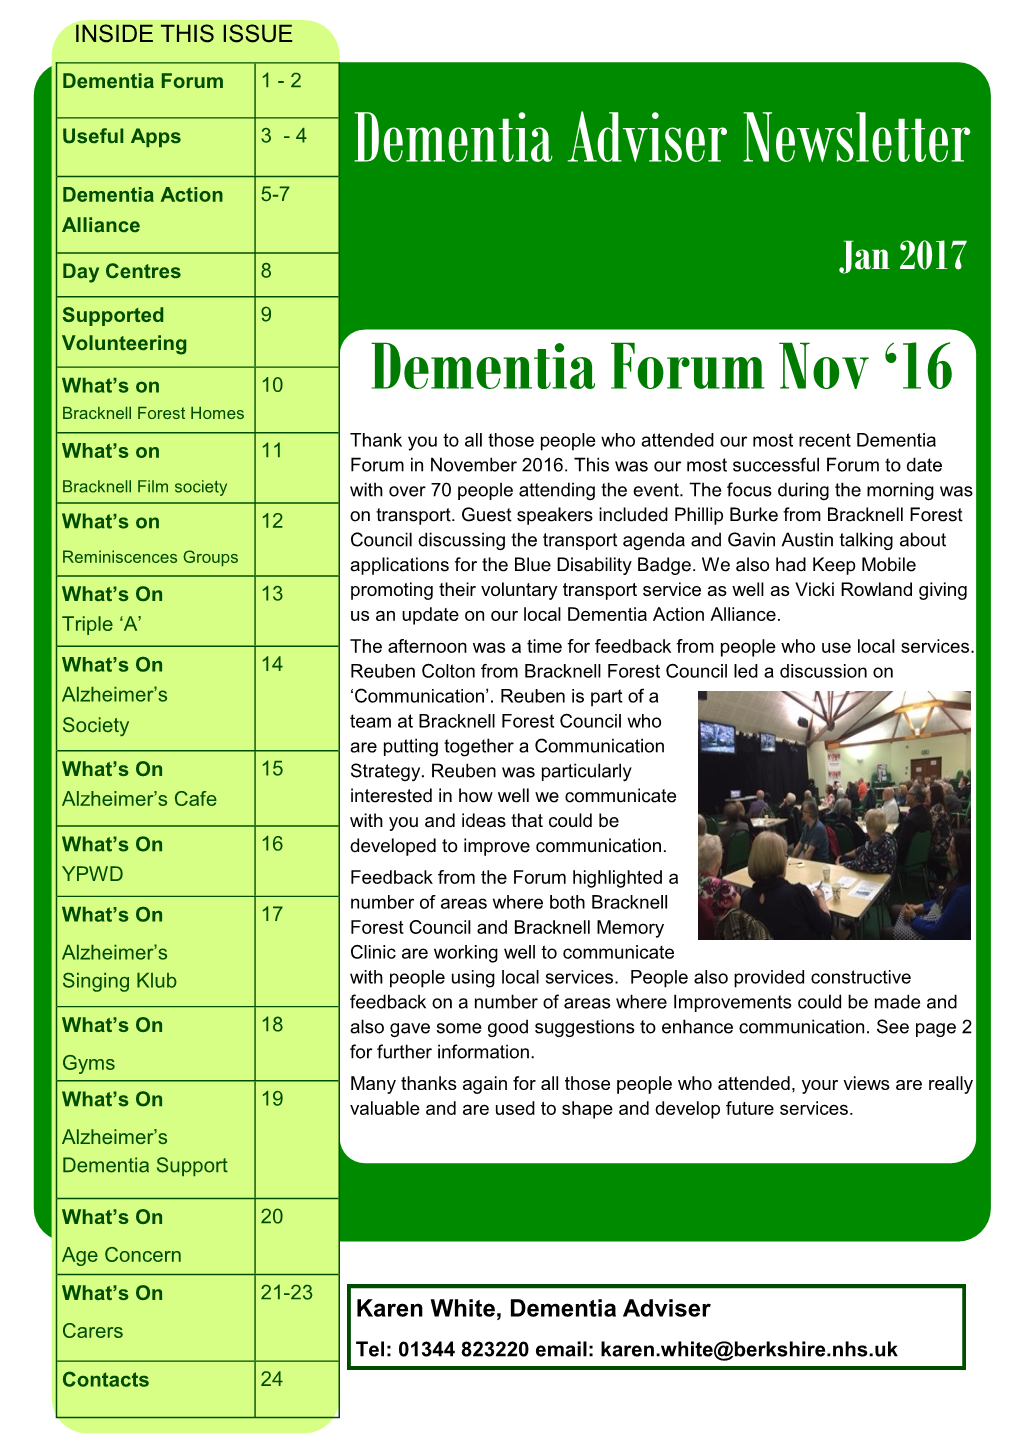 Dementia Adviser Newsletter Dementia Action 5-7 Alliance